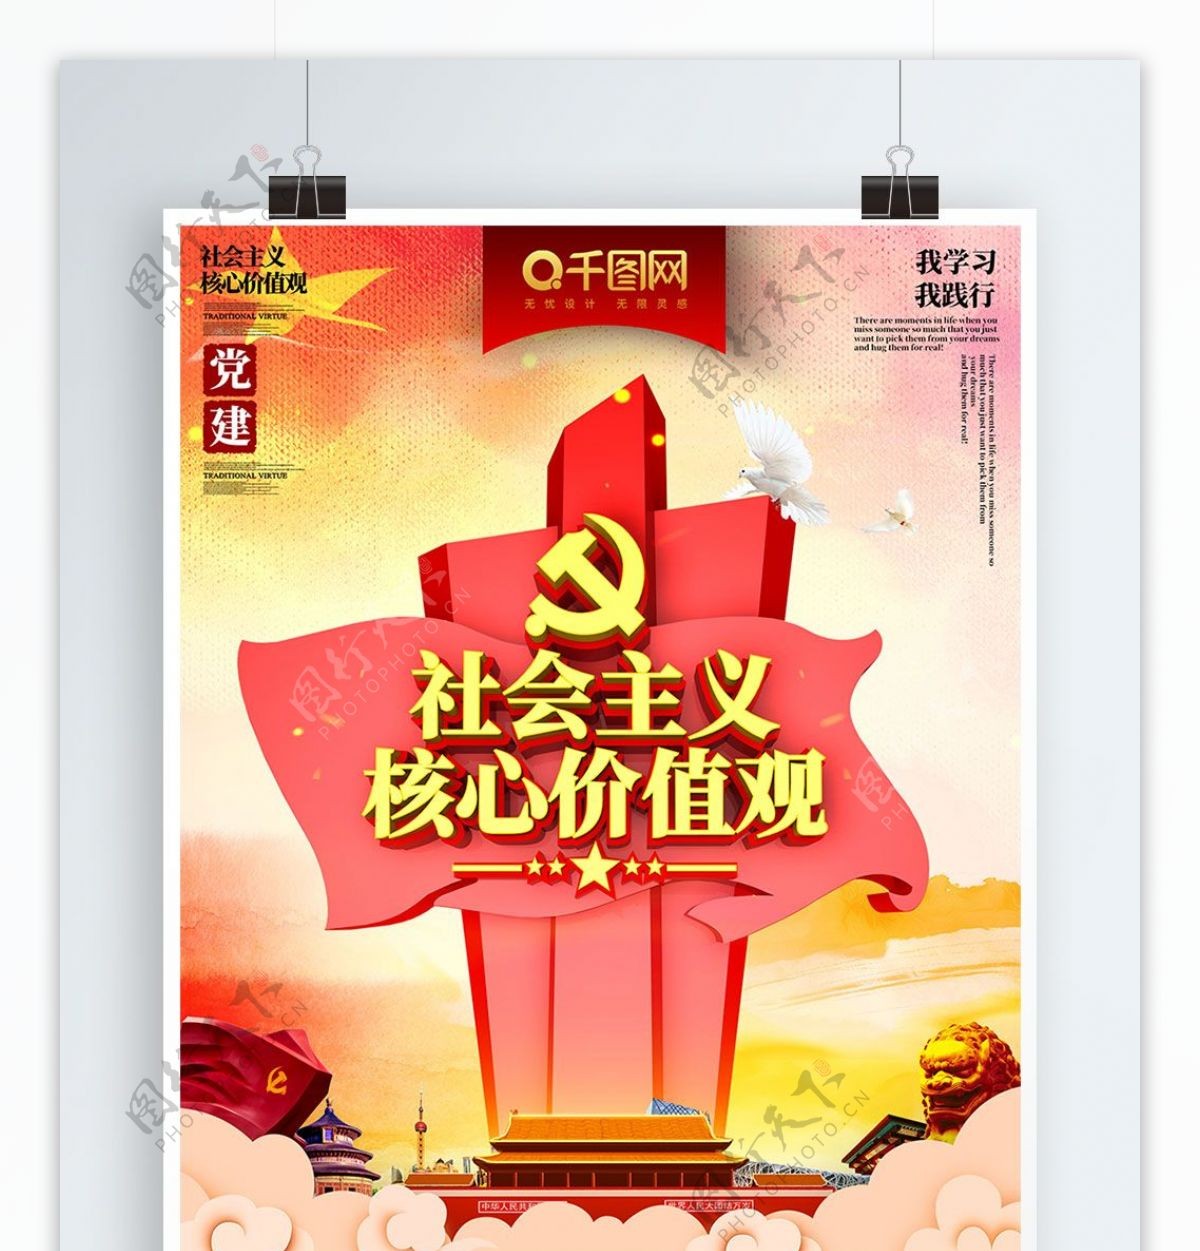 C4D大气社会主义核心价值观海报